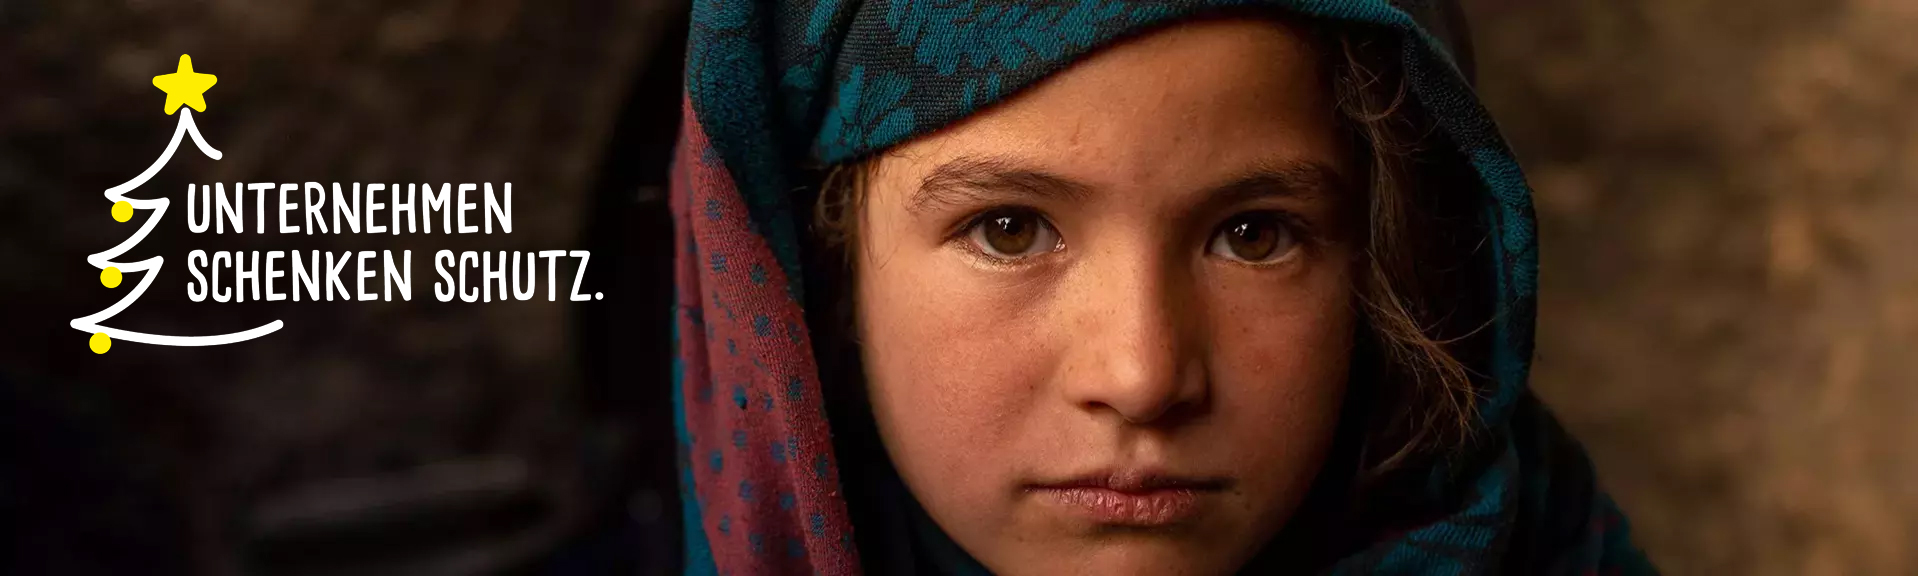 Afghanisches Mädchen blickt in Kamera